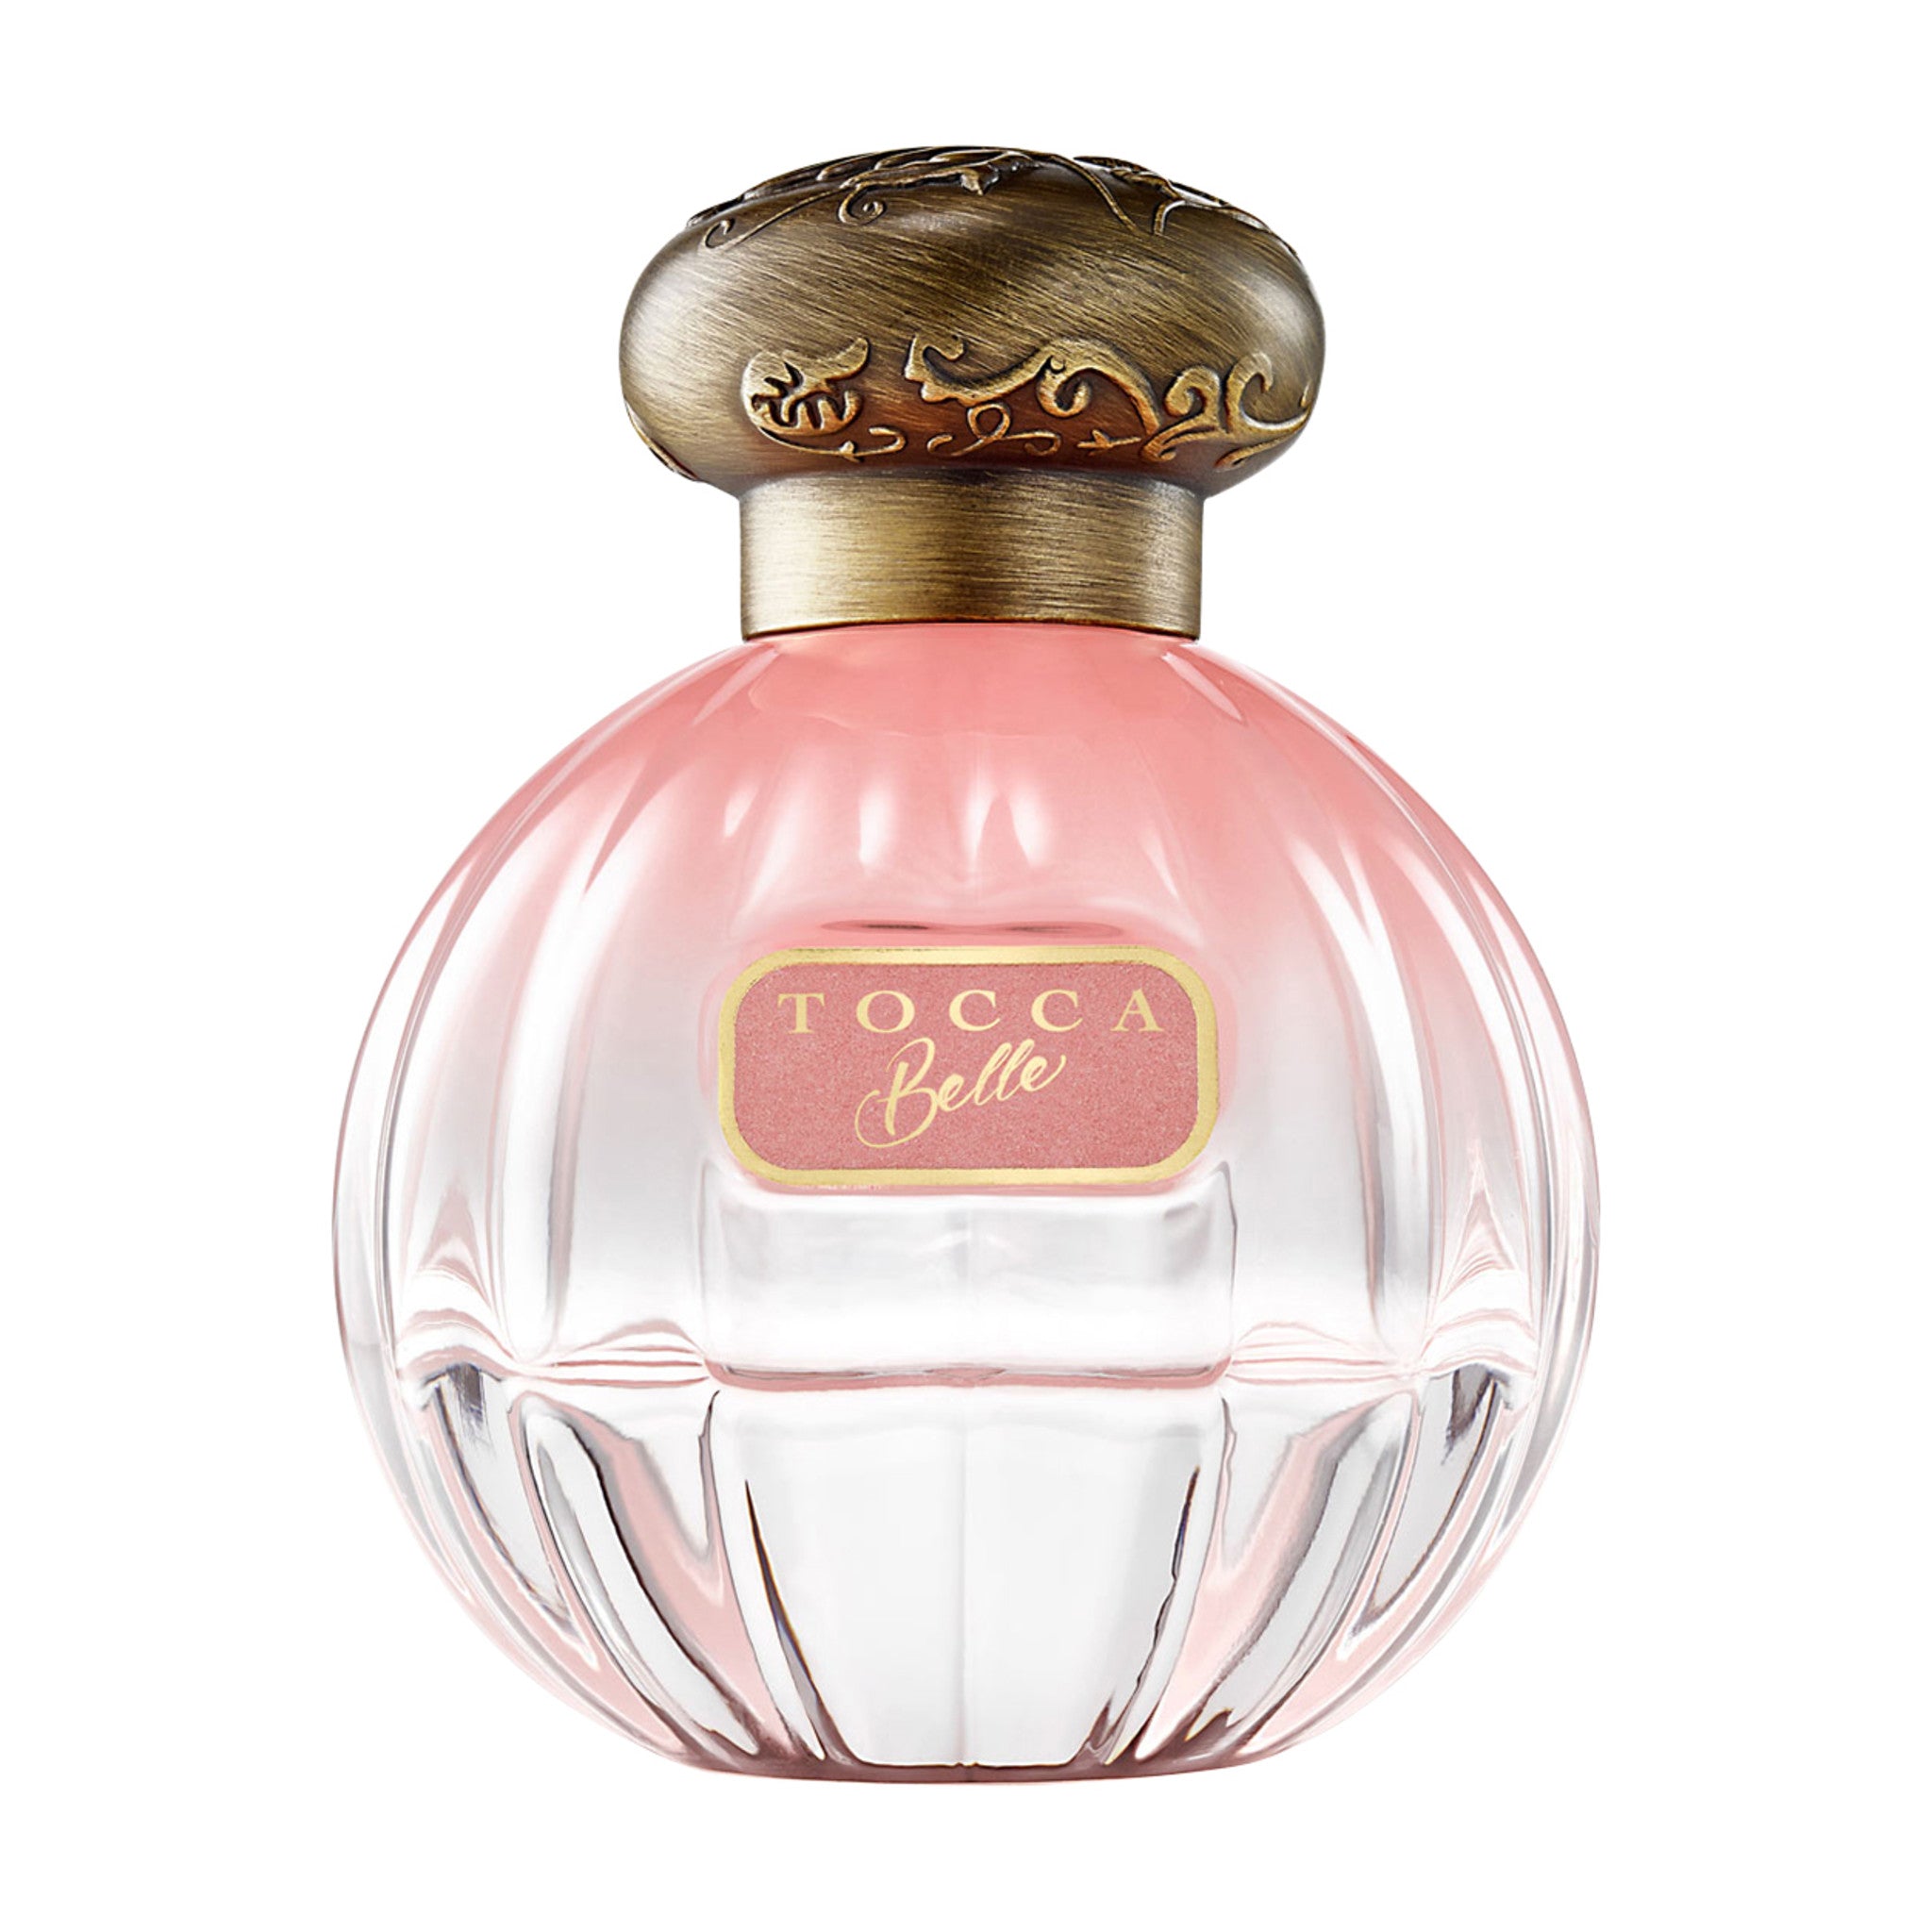 Tocca Belle Eau de Parfum Size variant: 50 ml main image.